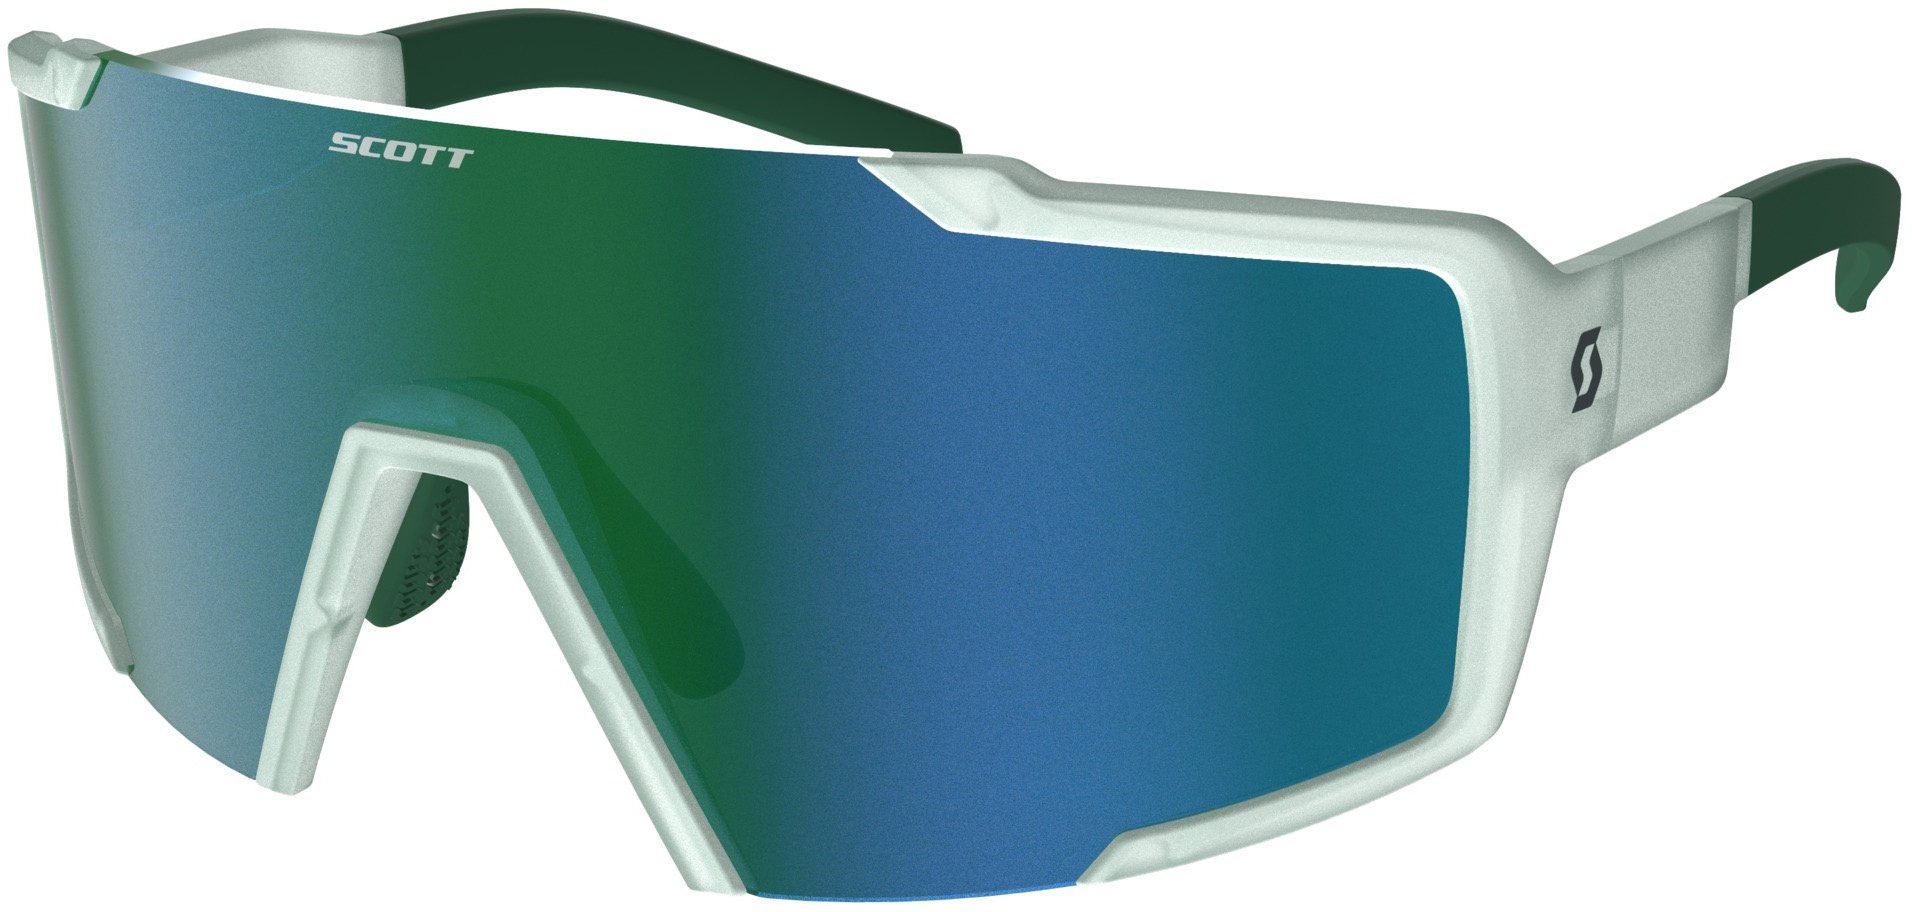 Scott Shield Cykelbrille - Grøn/Hvid/Blå